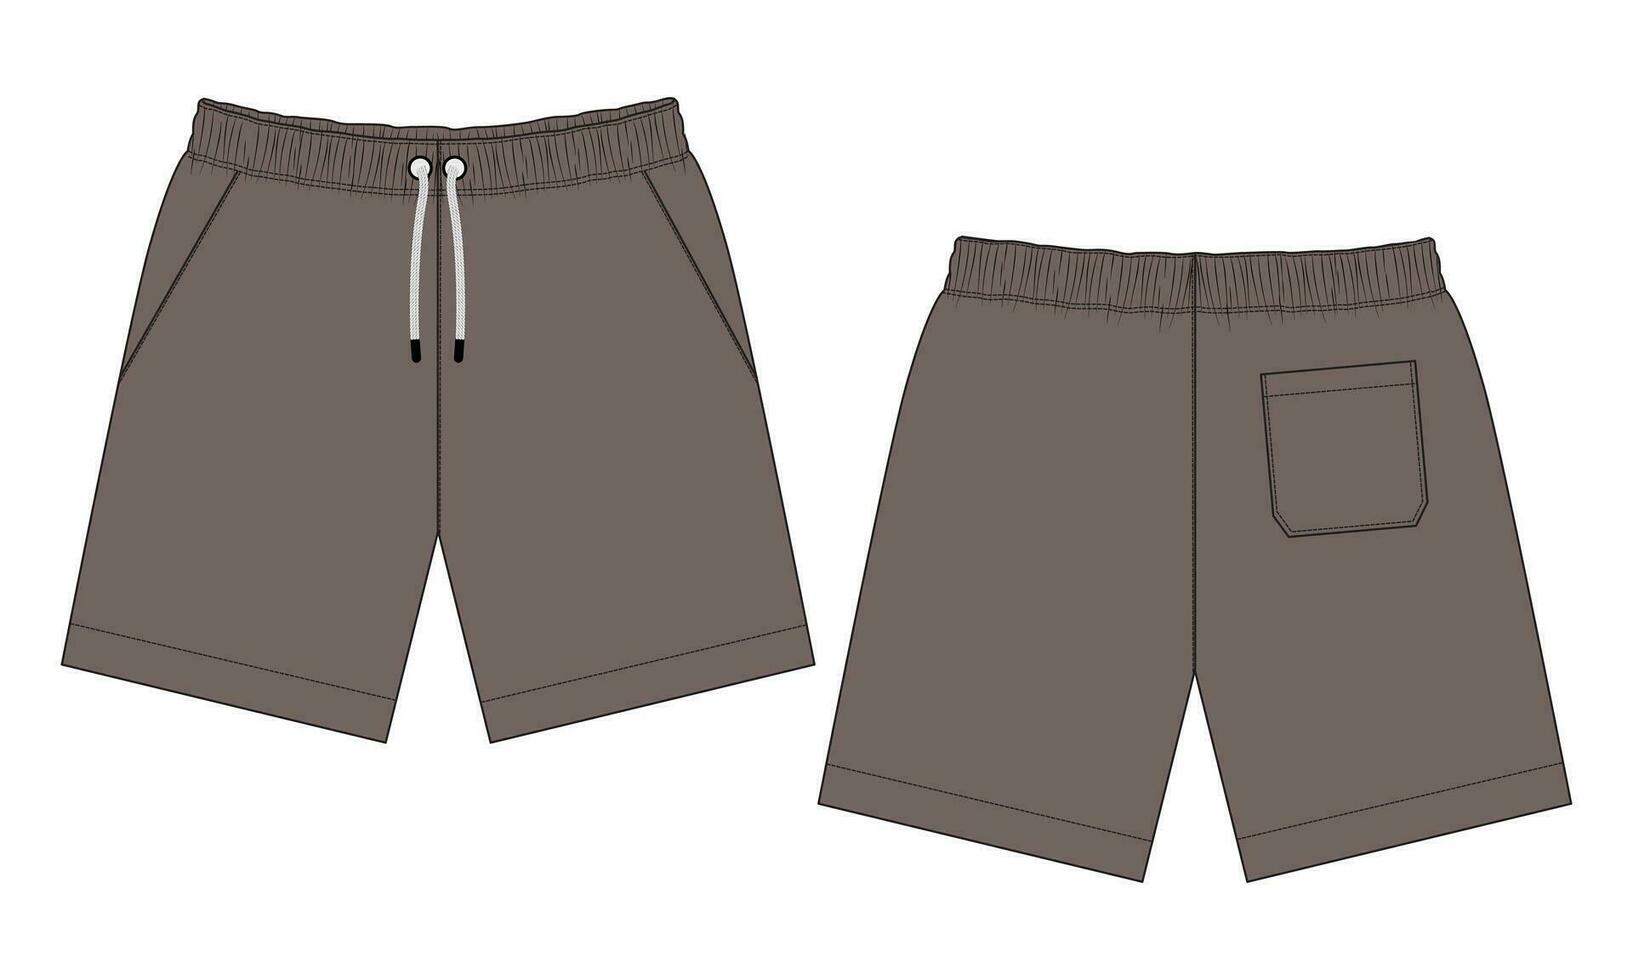 pantalones cortos pantalones vector ilustración modelo frente y espalda puntos de vista